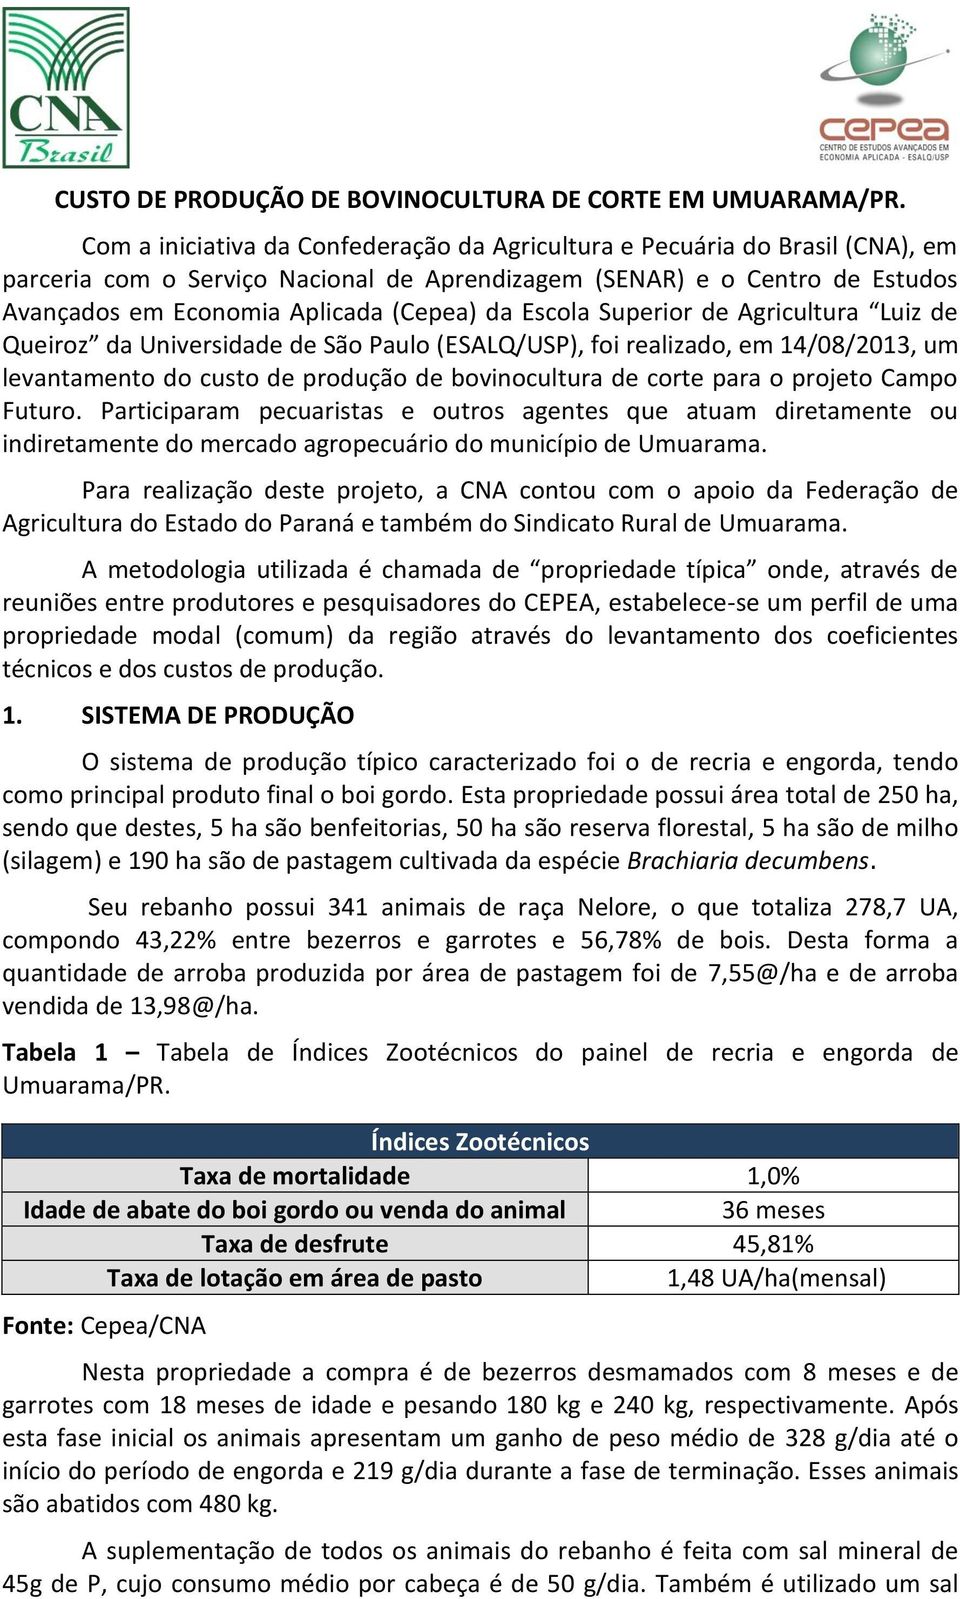 Escola Superior de Agricultura Luiz de Queiroz da Universidade de São Paulo (ESALQ/USP), foi realizado, em 14/08/2013, um levantamento do custo de produção de bovinocultura de corte para o projeto